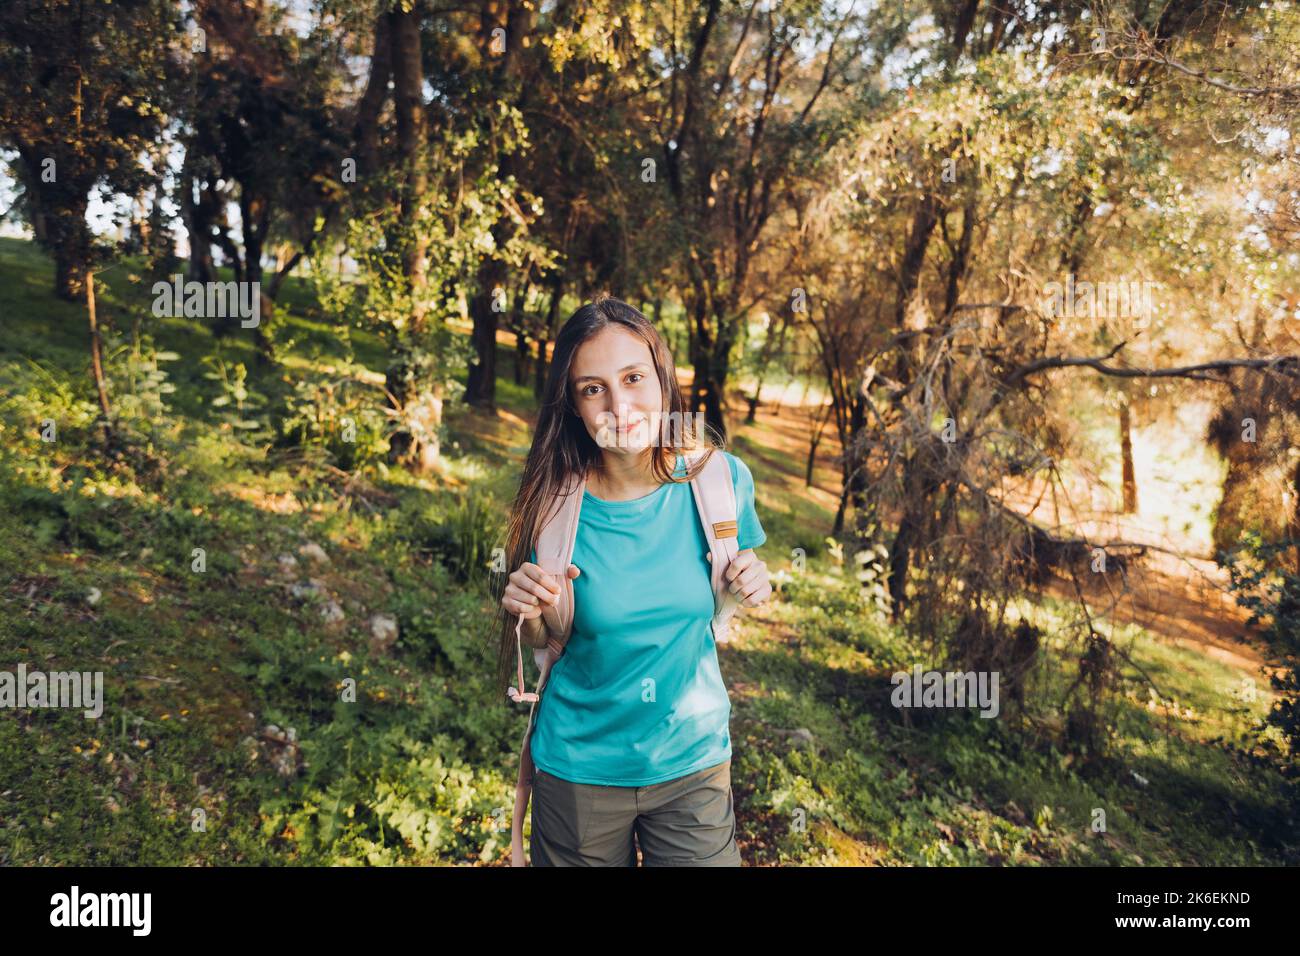 Confiance en soi. Adolescente regardant un sac à dos avec un sourire serein dans la forêt. Banque D'Images